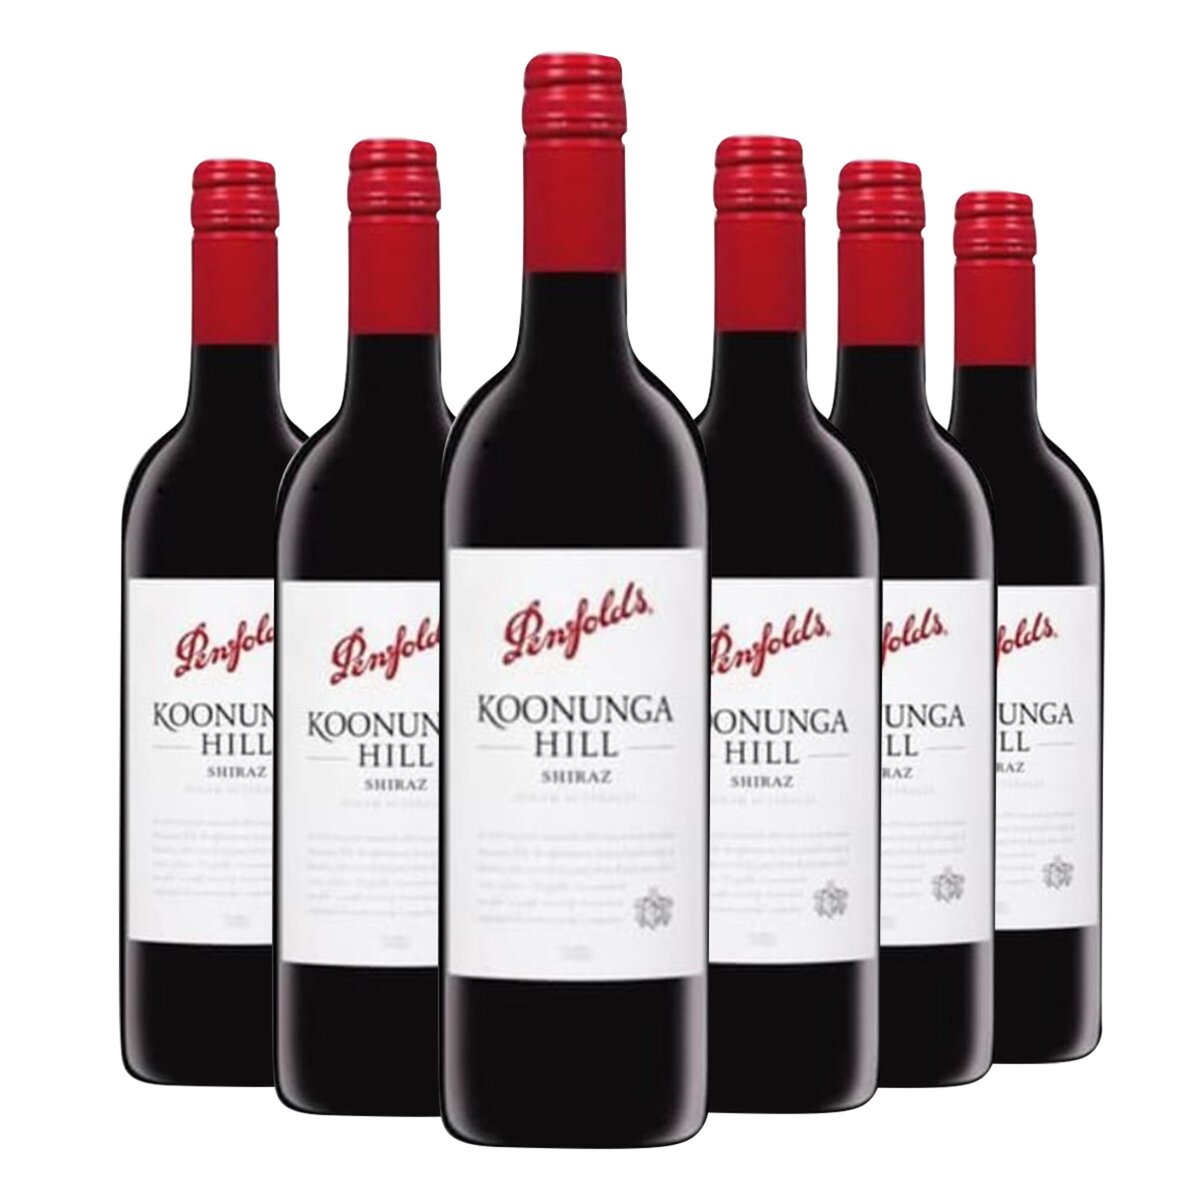 Lot de 6 bouteilles Penfolds Koonunga Hill Shiraz Australie Rouge 2013